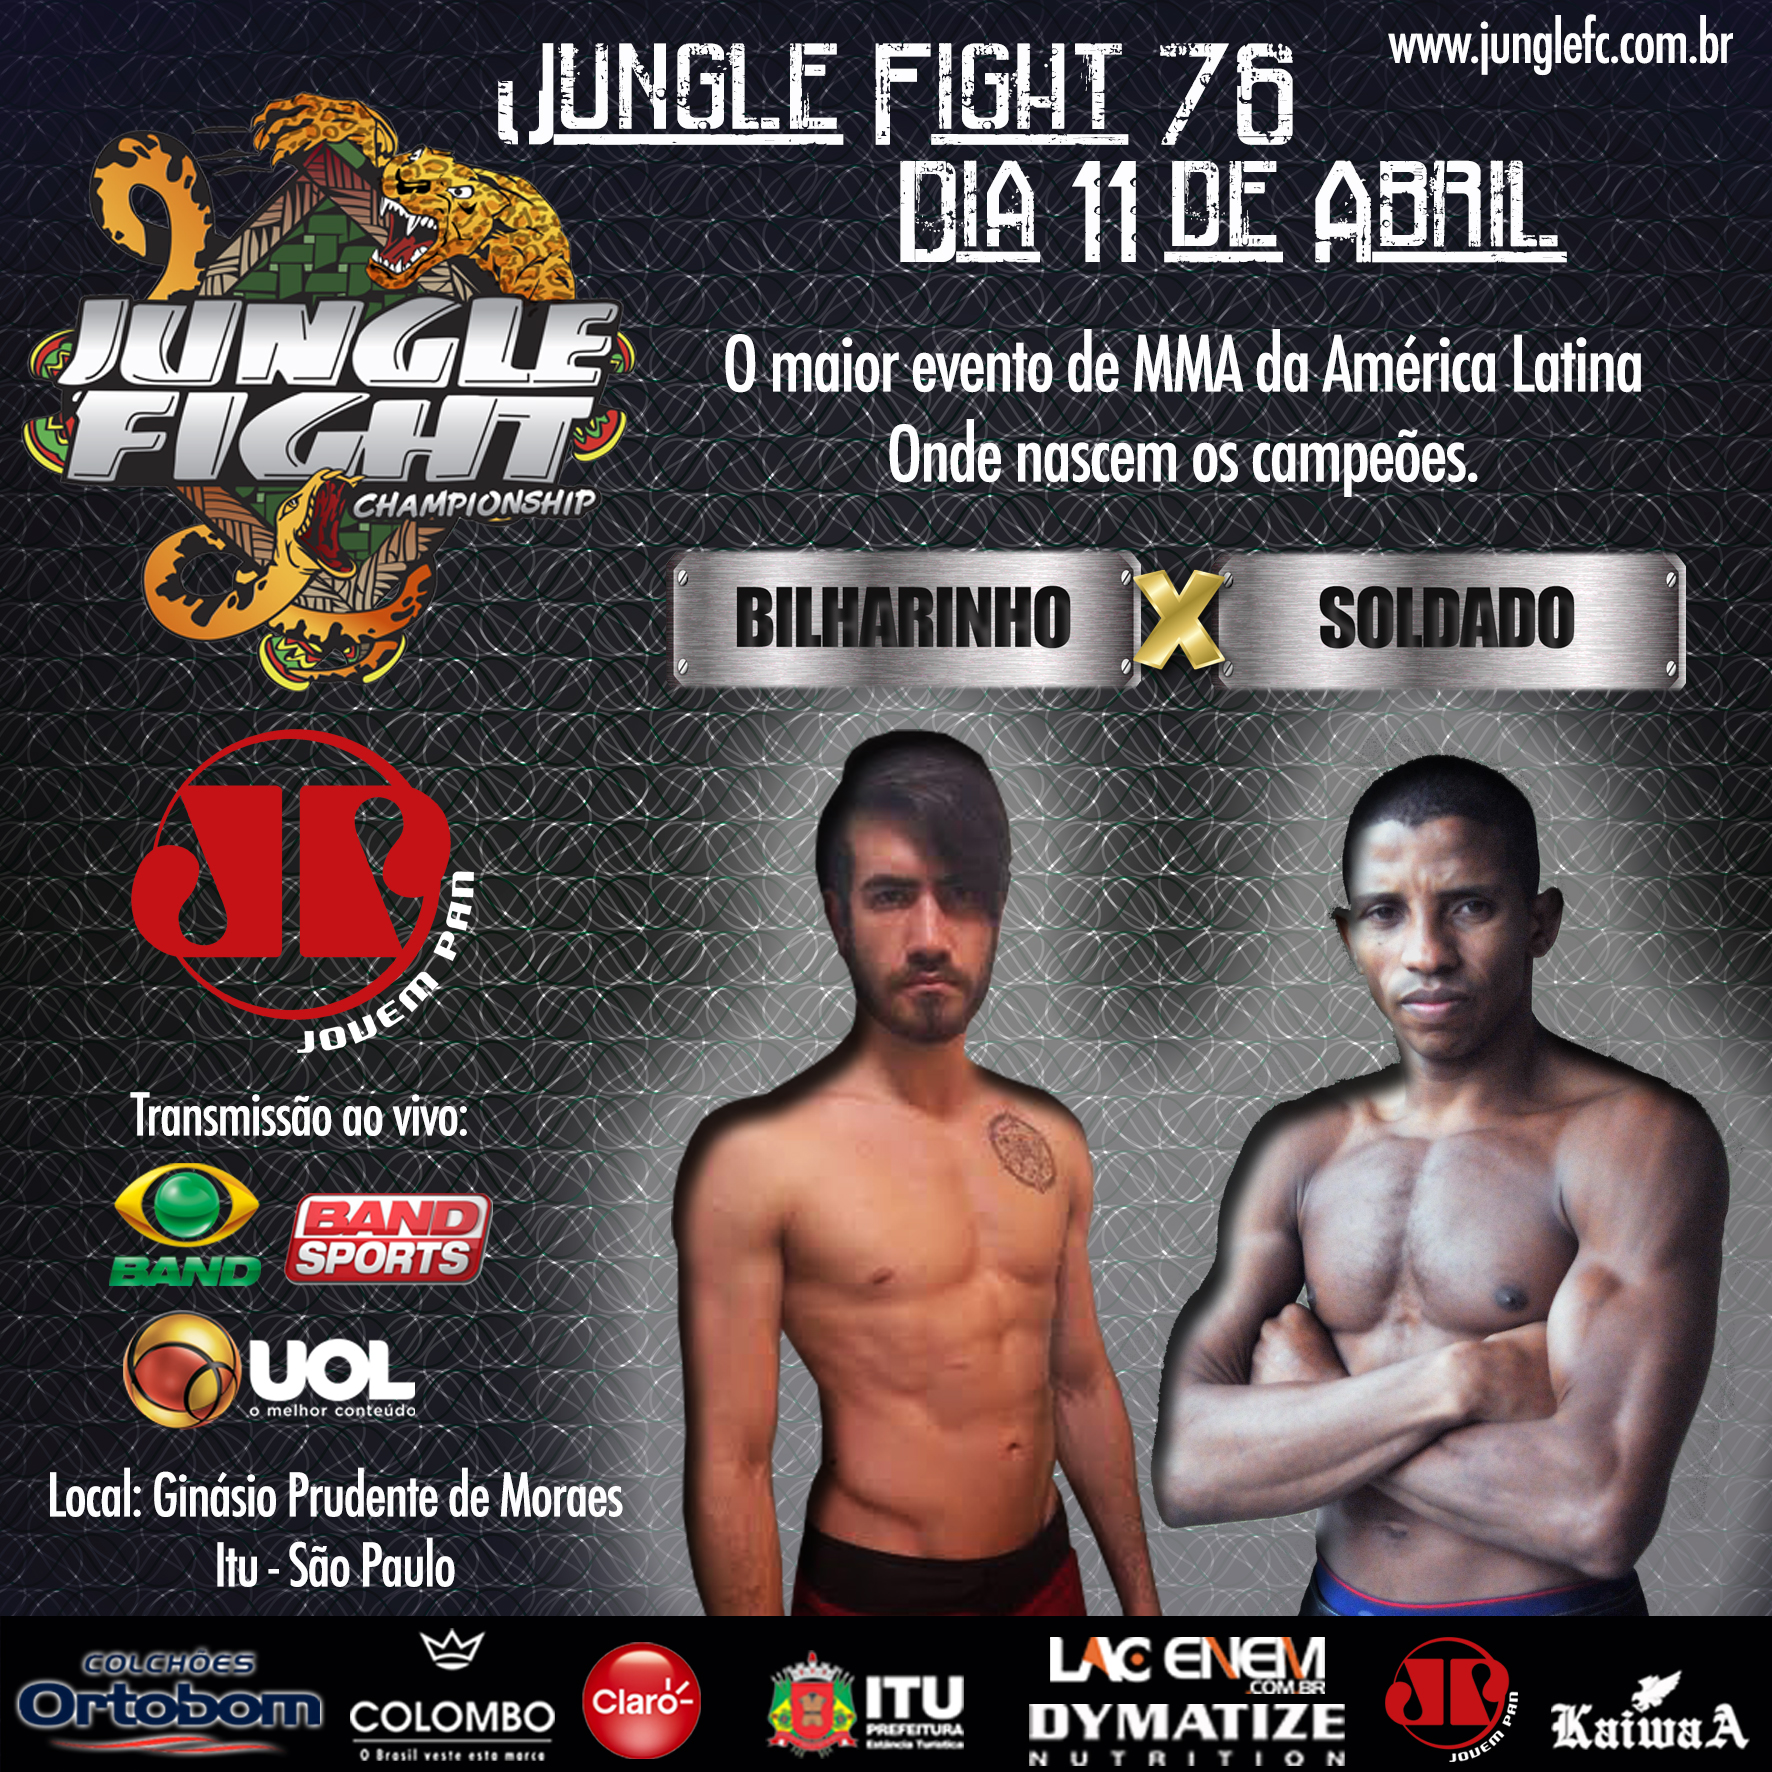 UOL – Jungle Fight volta a São Paulo com lutas por cinturão e